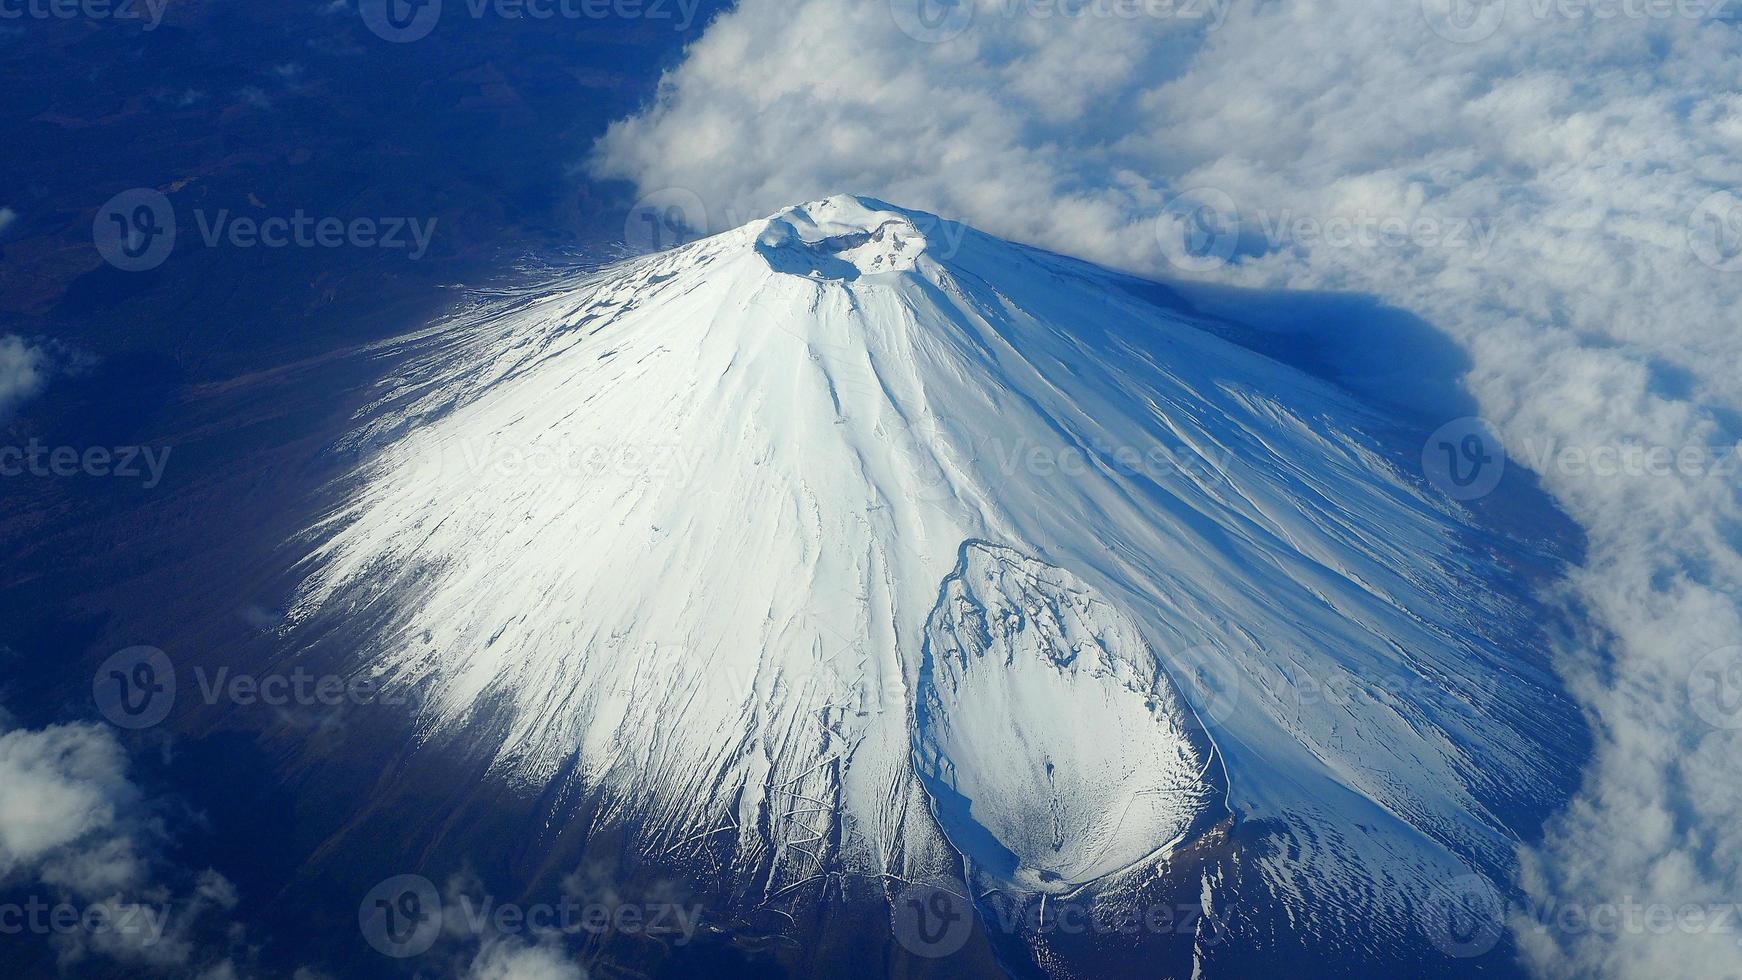 ángulo de visión superior de mt. montaña fuji y nieve blanca foto